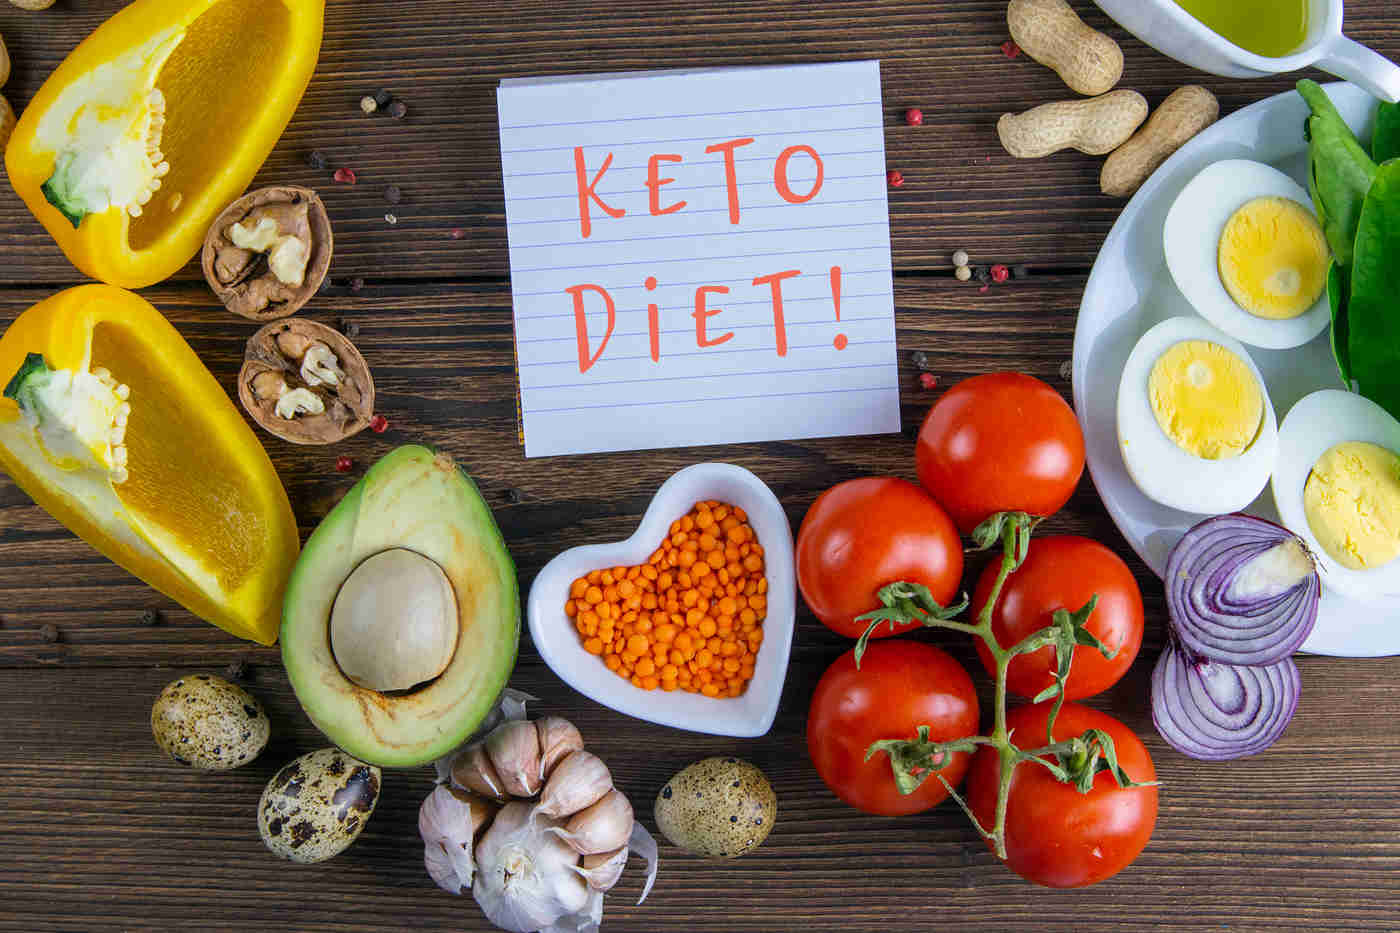 Asociaţia Dieta keto medicală - Home